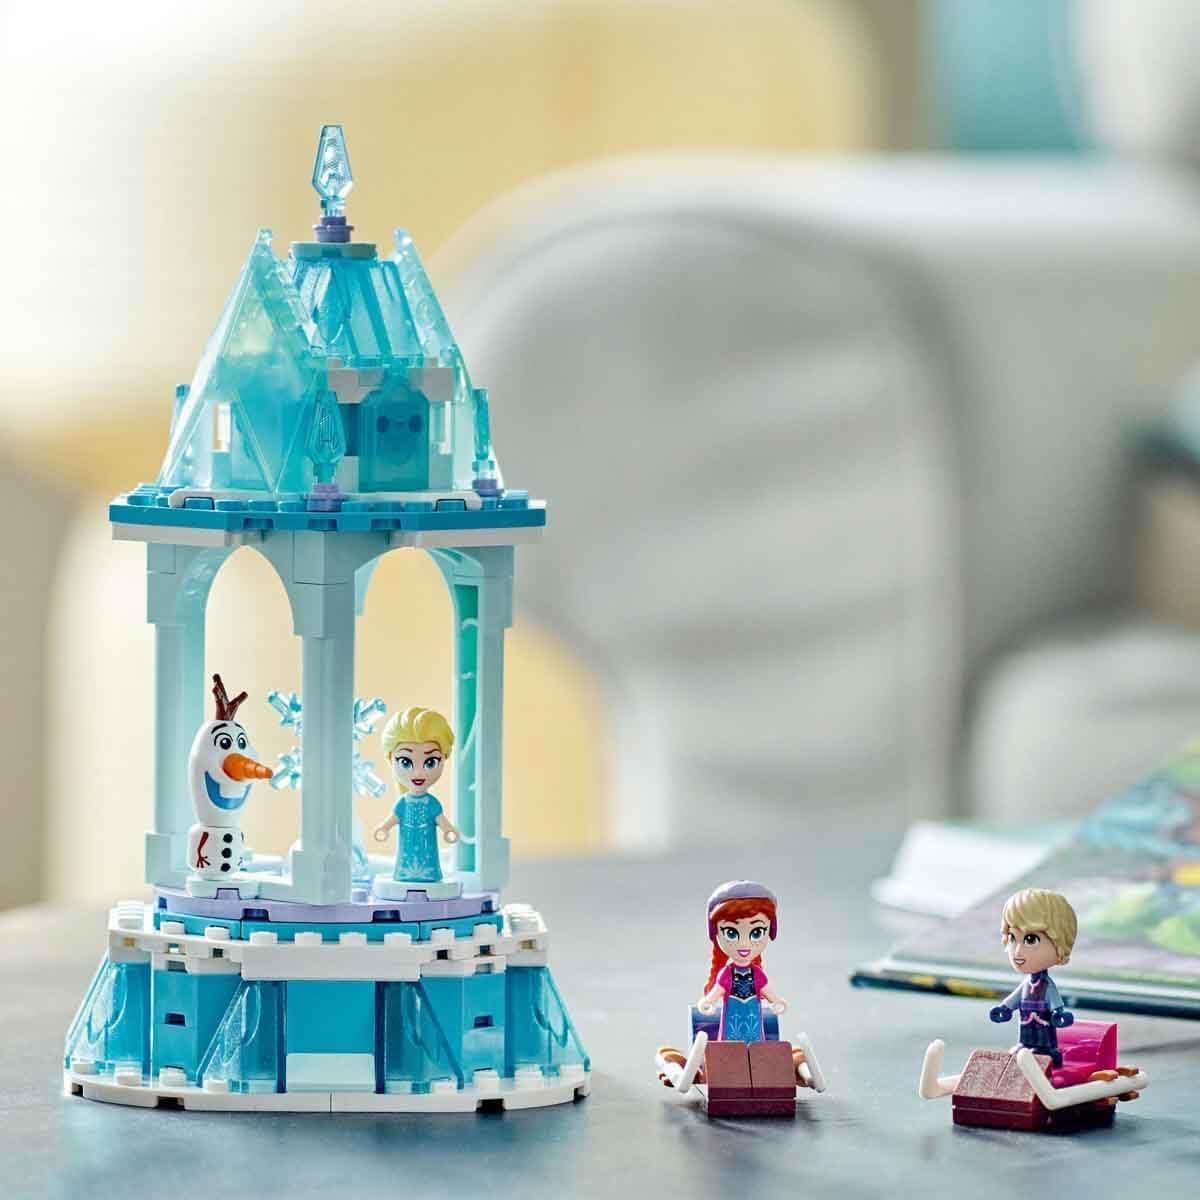 LEGO Disney - Princess Anna and Elsa Merry-Go-Land 43218